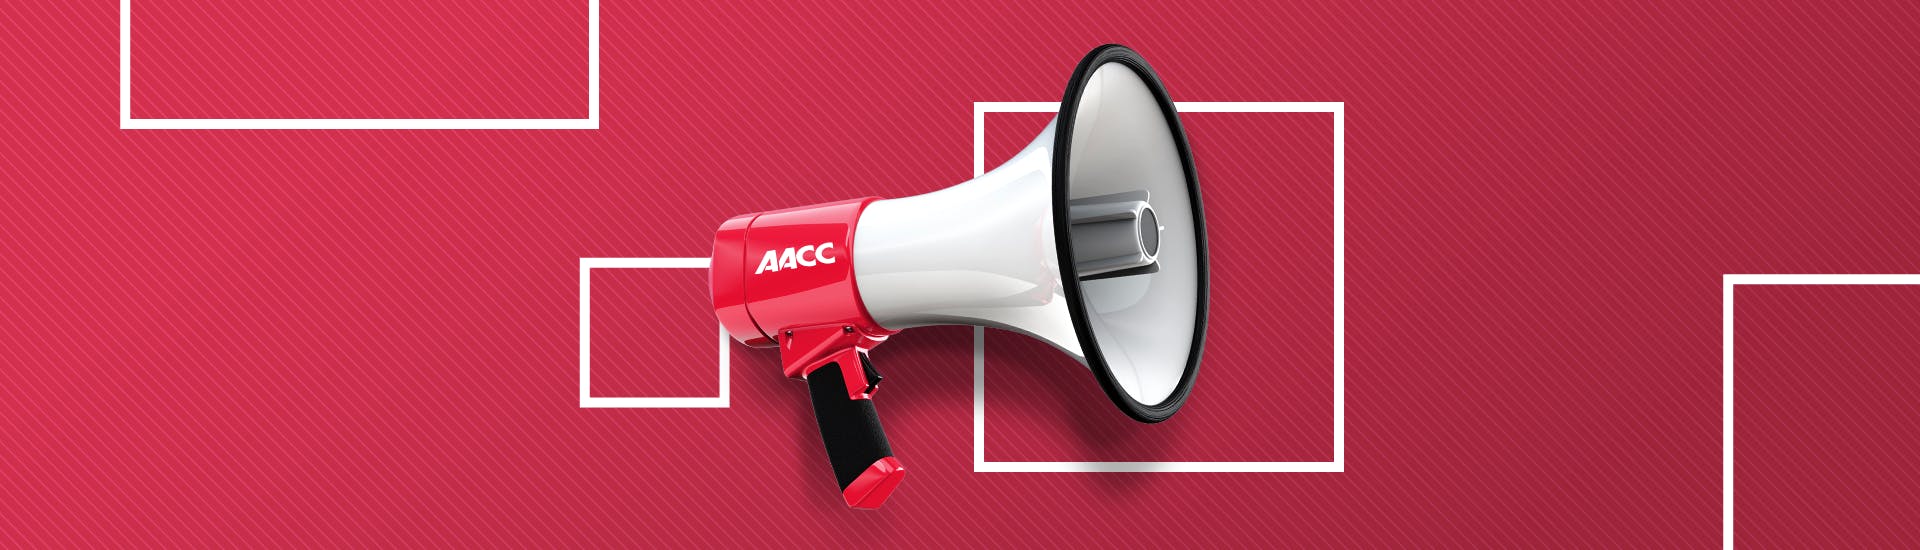 Un mégaphone avec un logo AACC